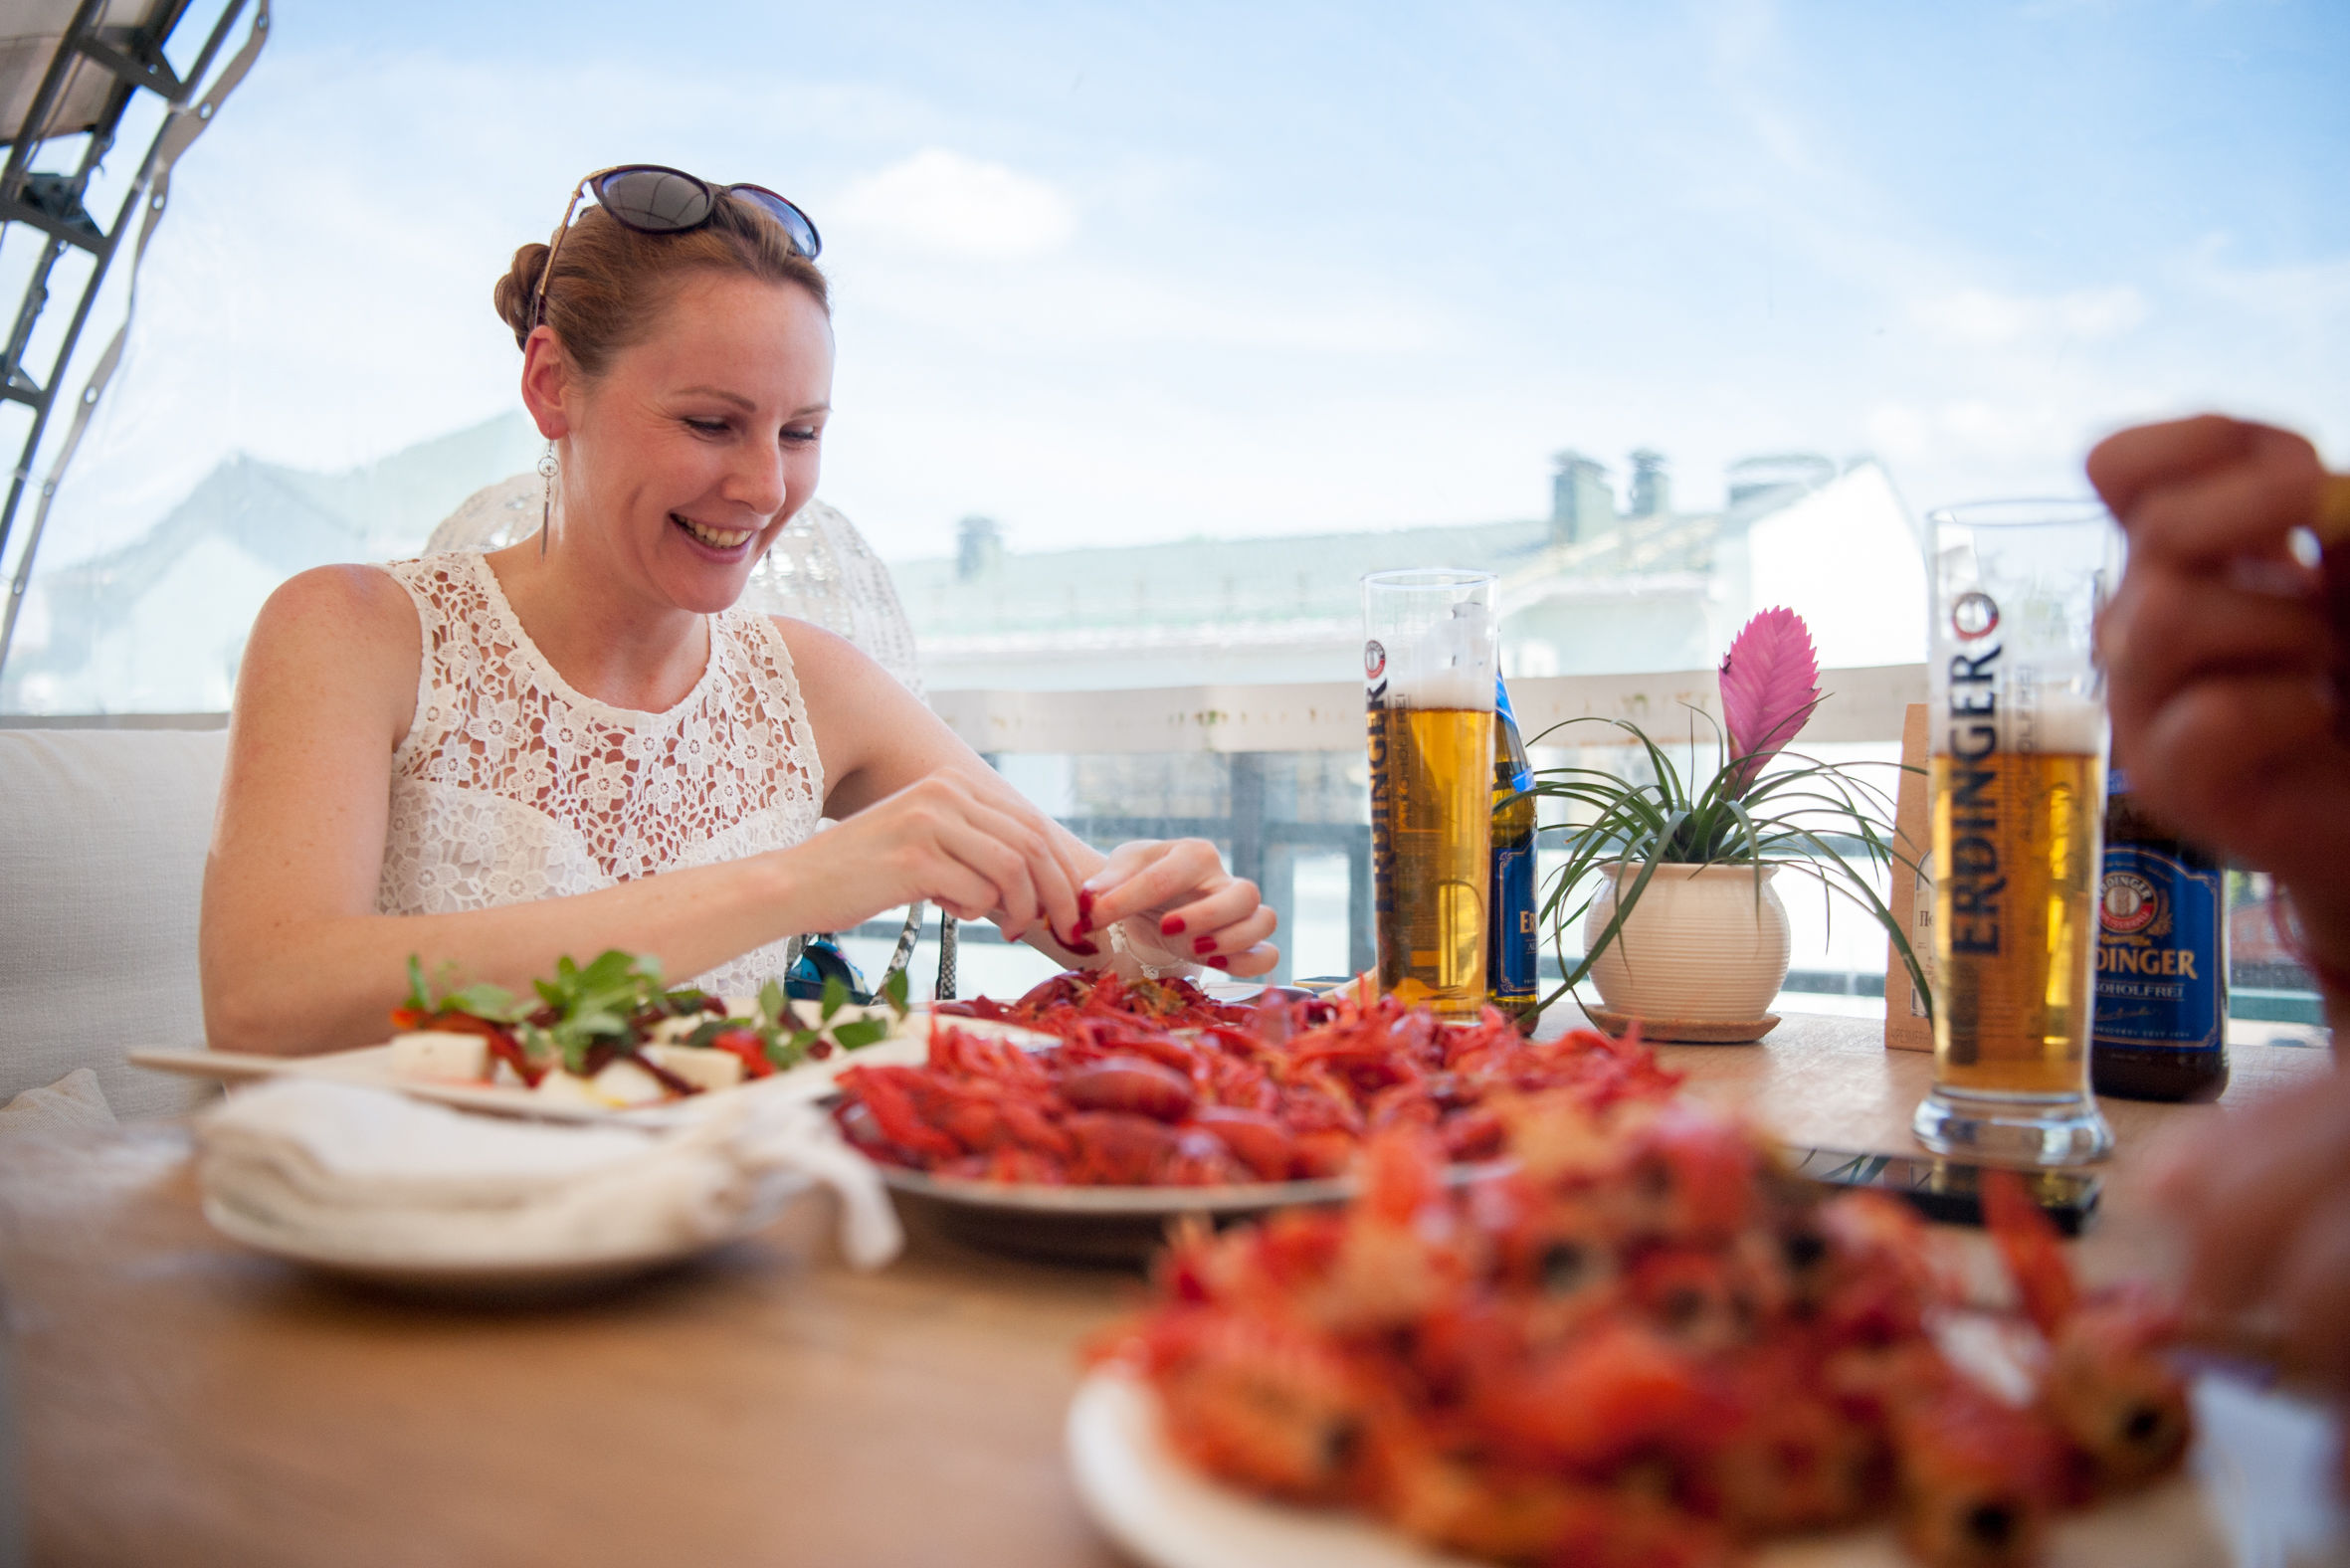 俄罗斯餐厅世界杯期间推美女服务员喂小龙虾服